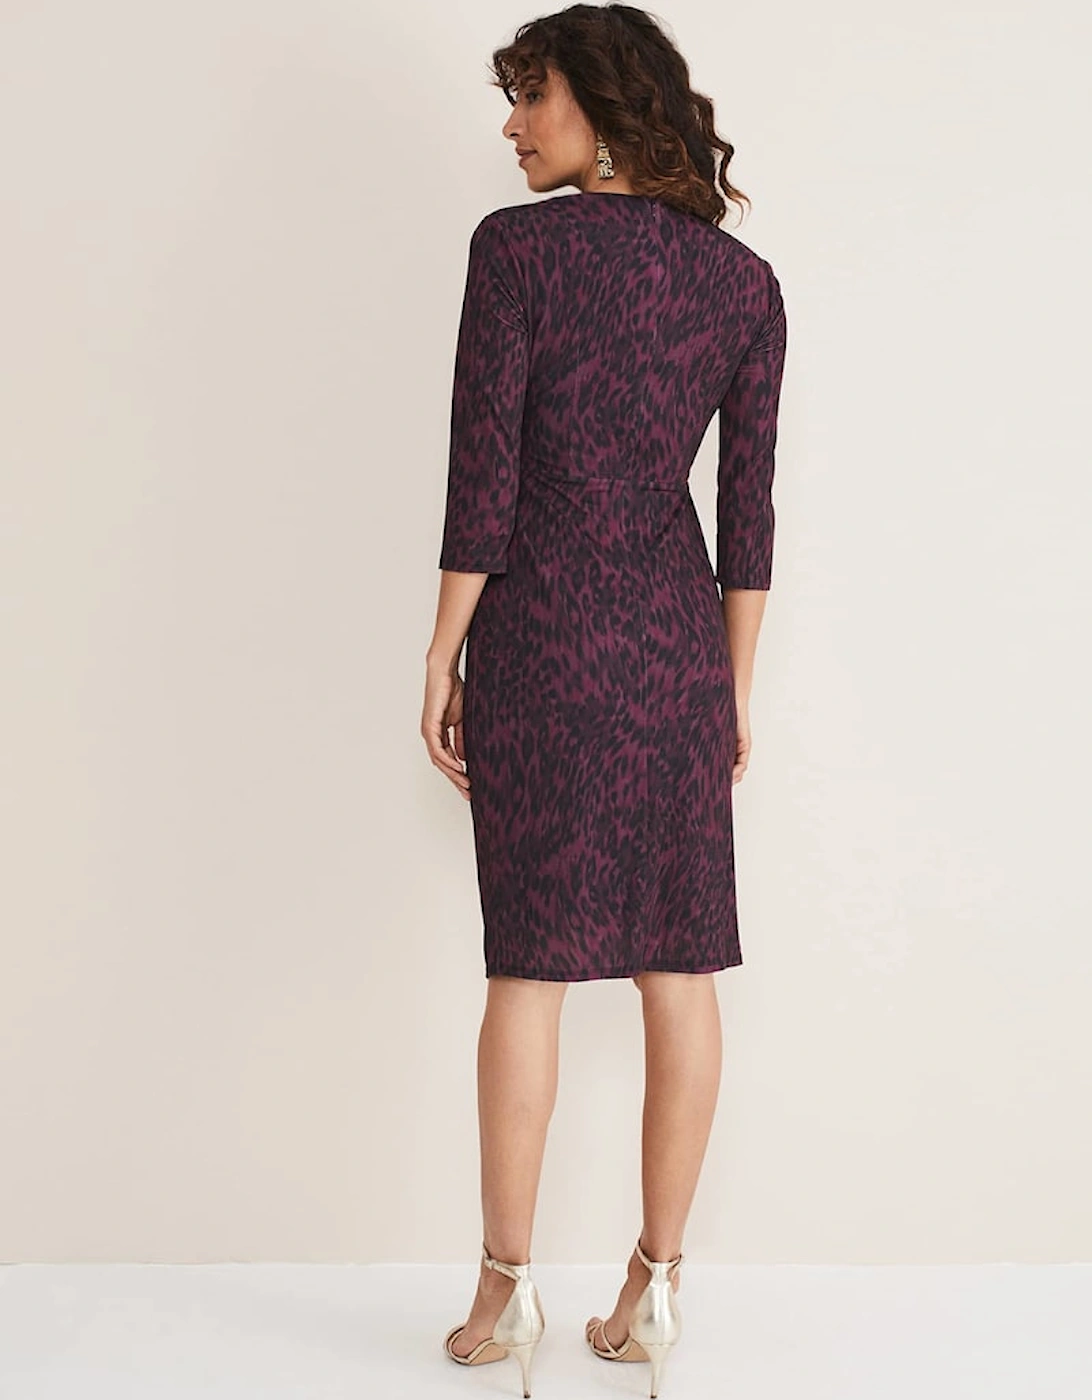 Nieve Leopard Print Dress